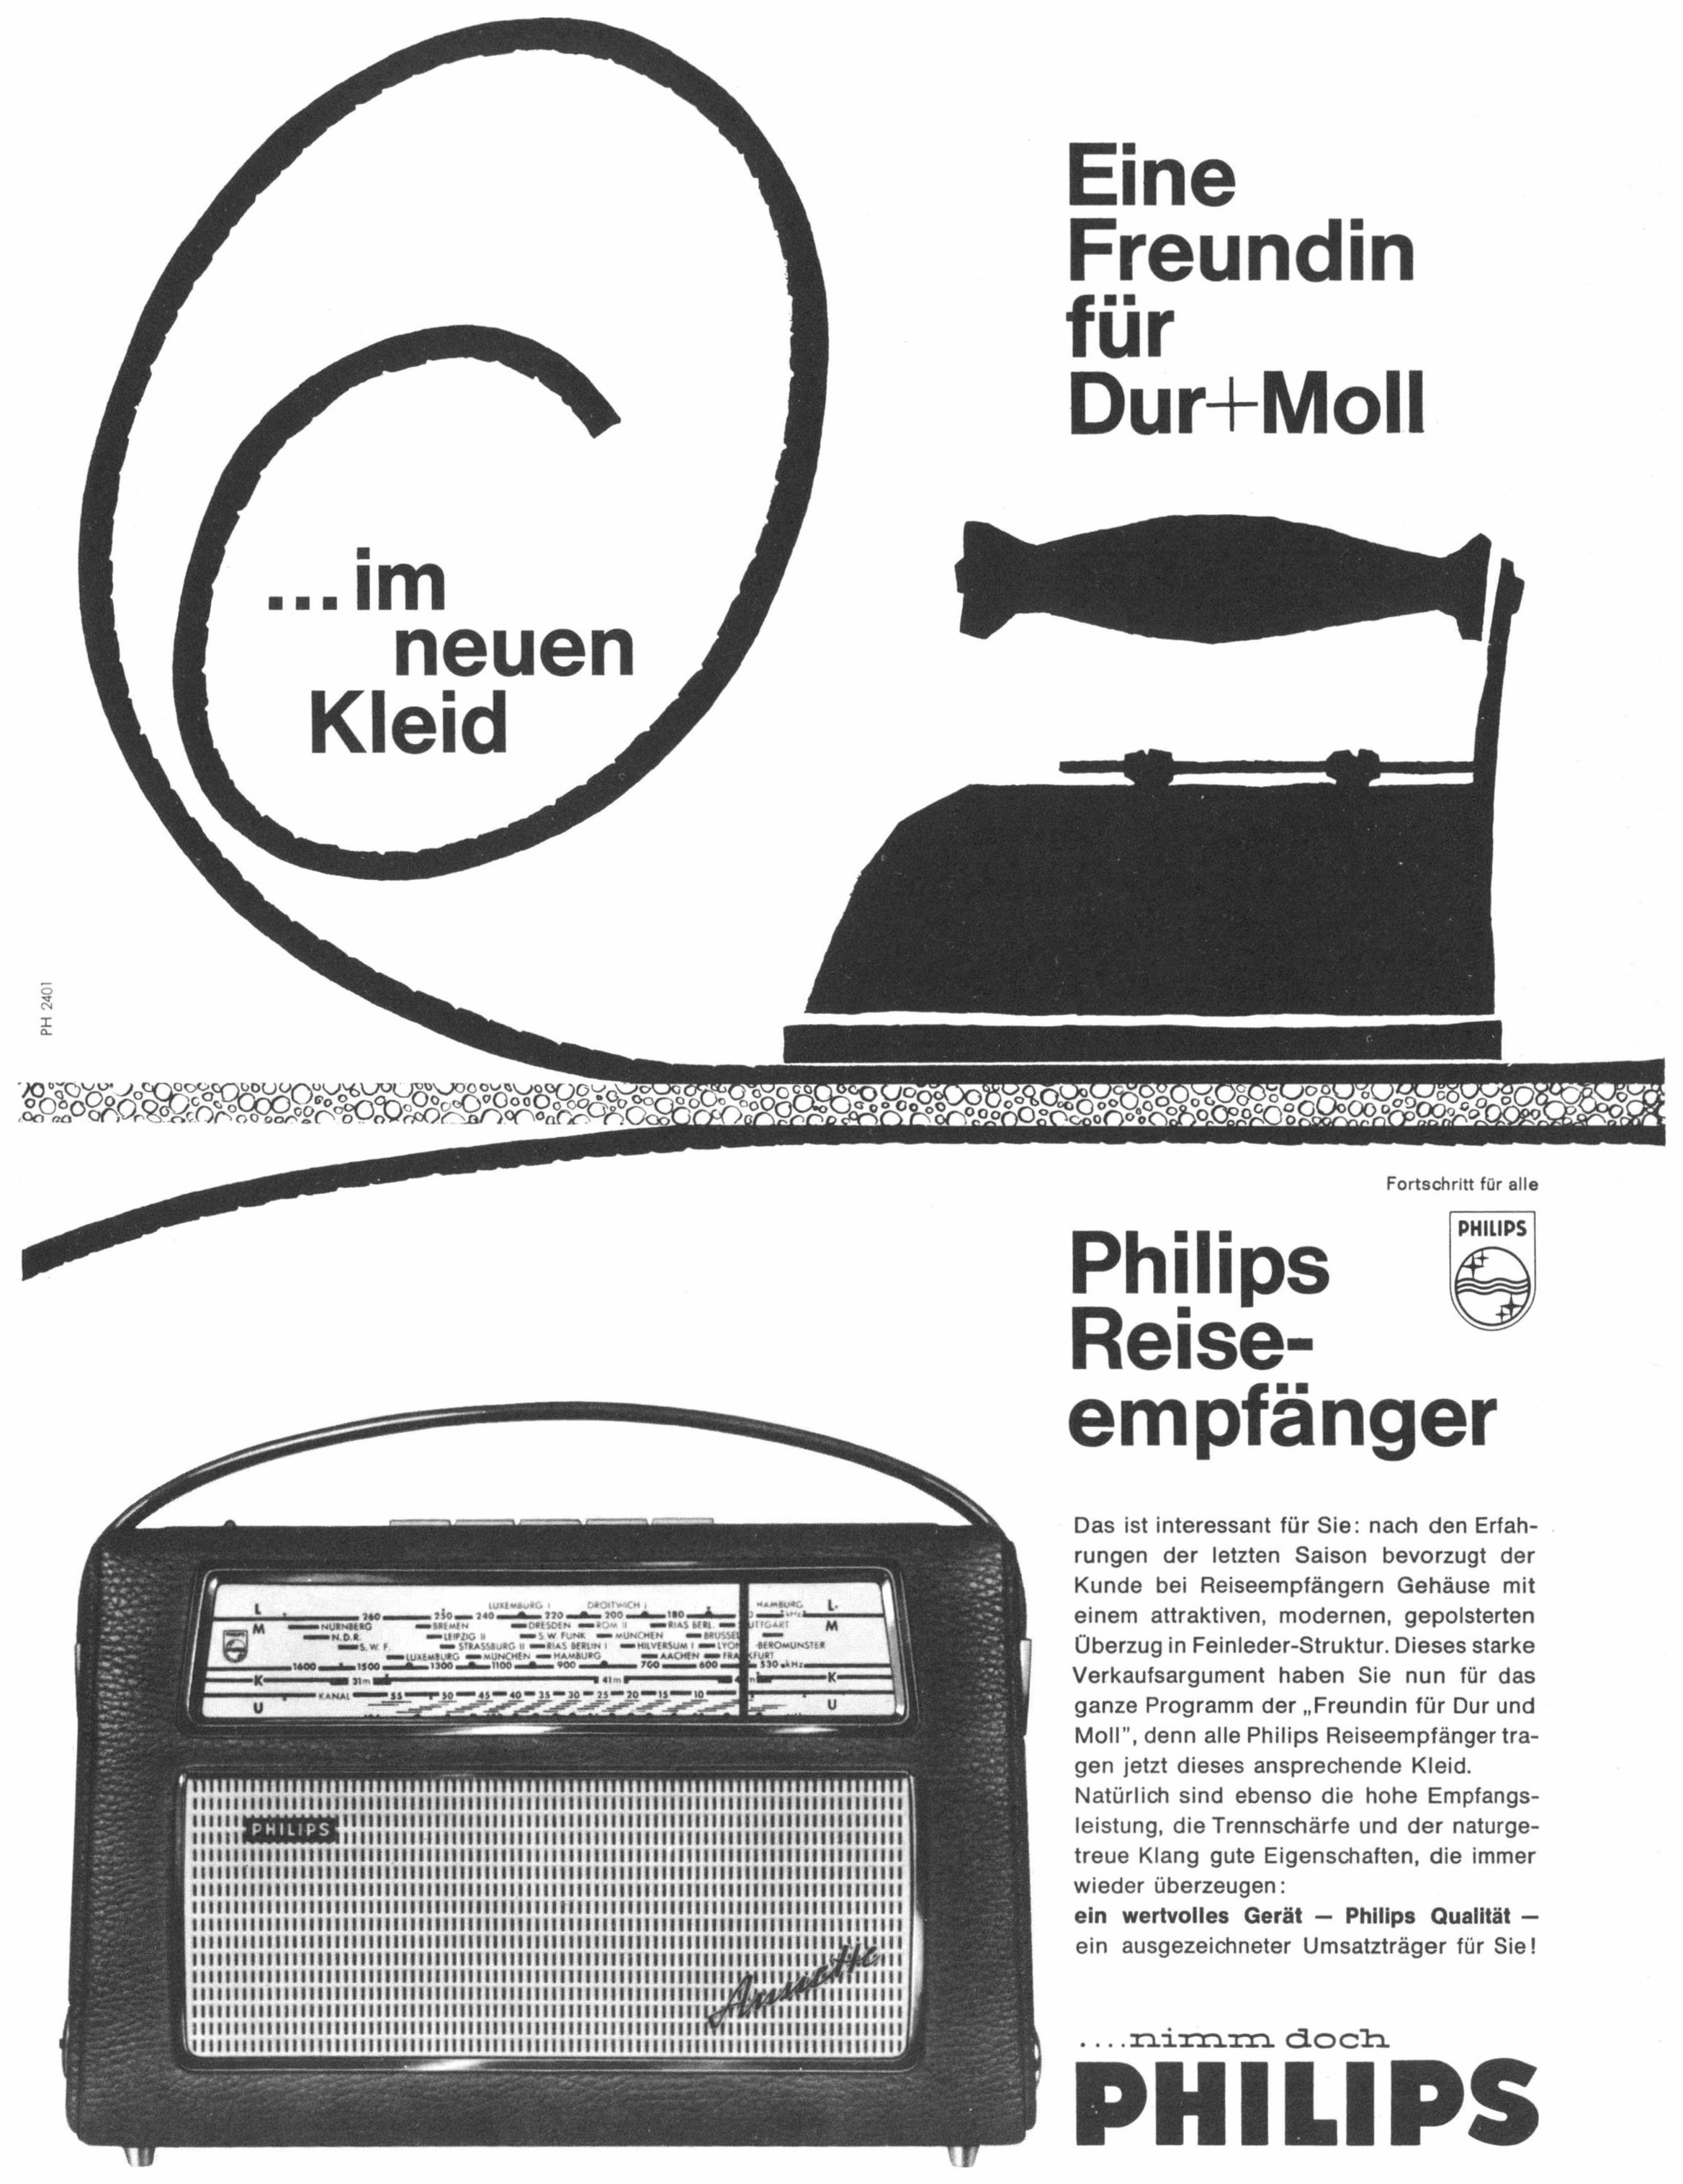 Philips 1962 01.jpg